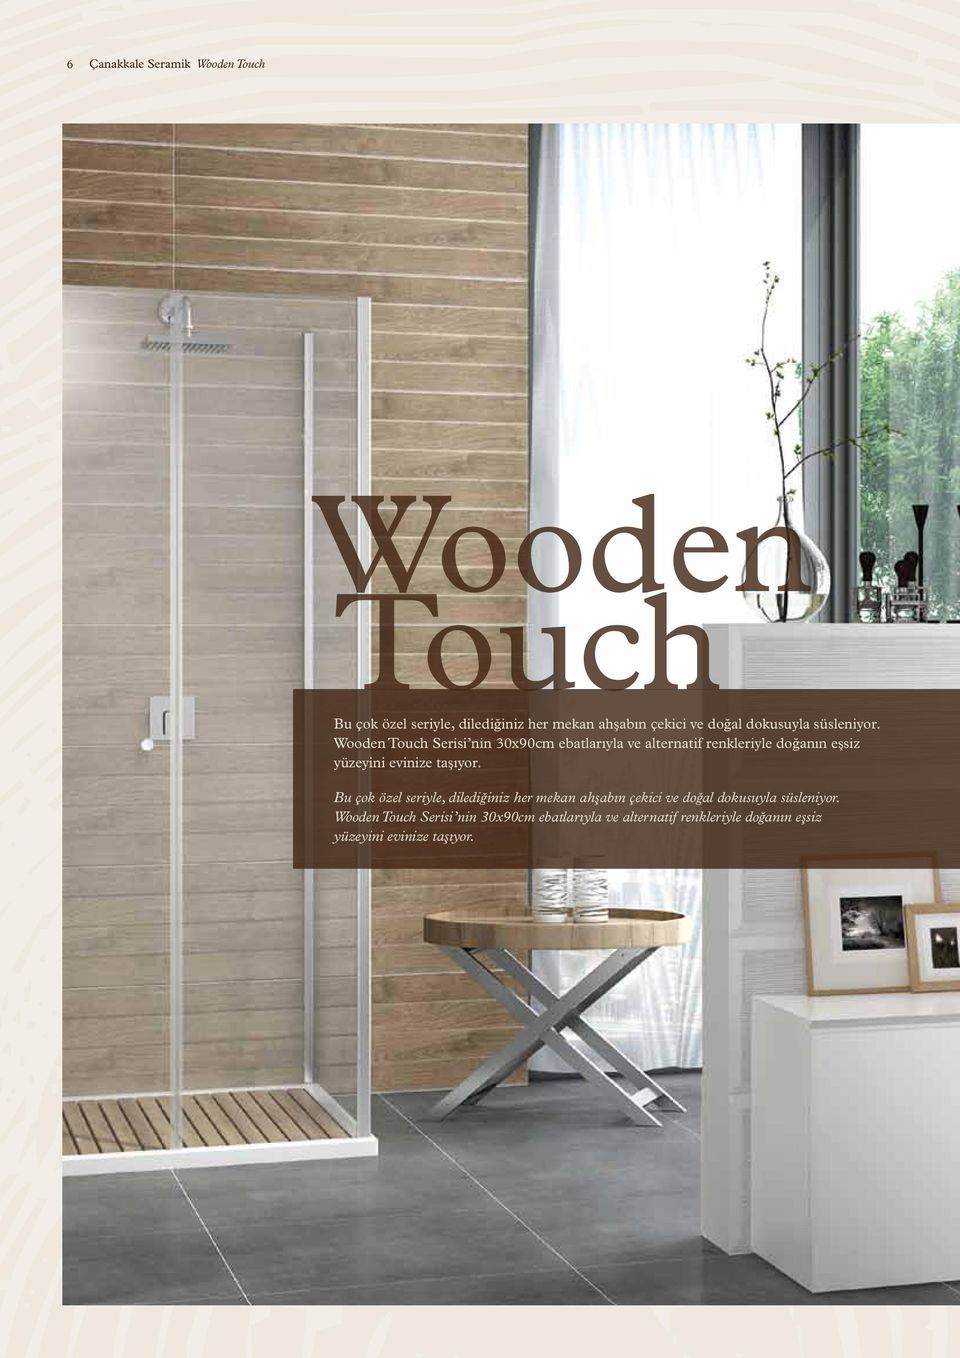 Wooden Touch Serisi nin 30x90cm ebatlarıyla ve alternatif renkleriyle doğanın eşsiz yüzeyini evinize taşıyor.